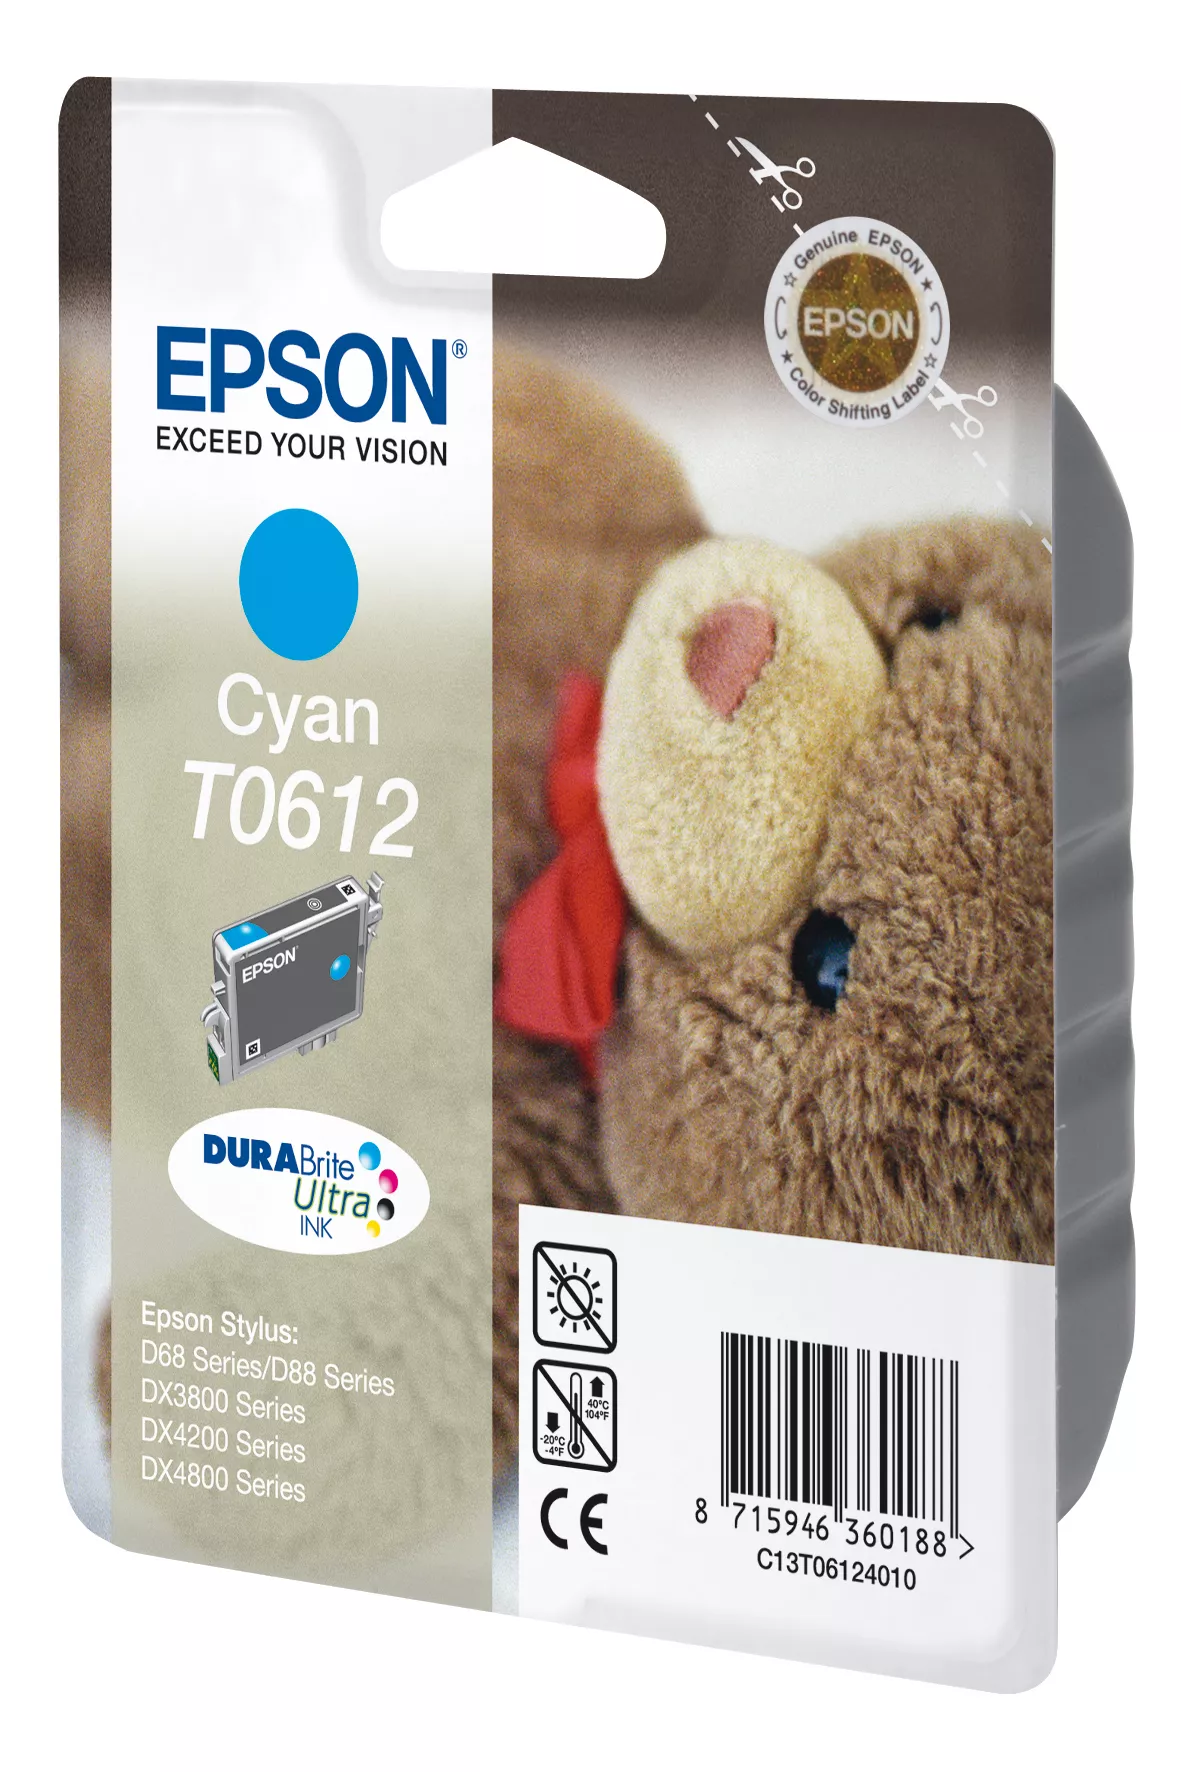 Achat EPSON T0612 cartouche d encre cyan capacité standard sur hello RSE - visuel 3